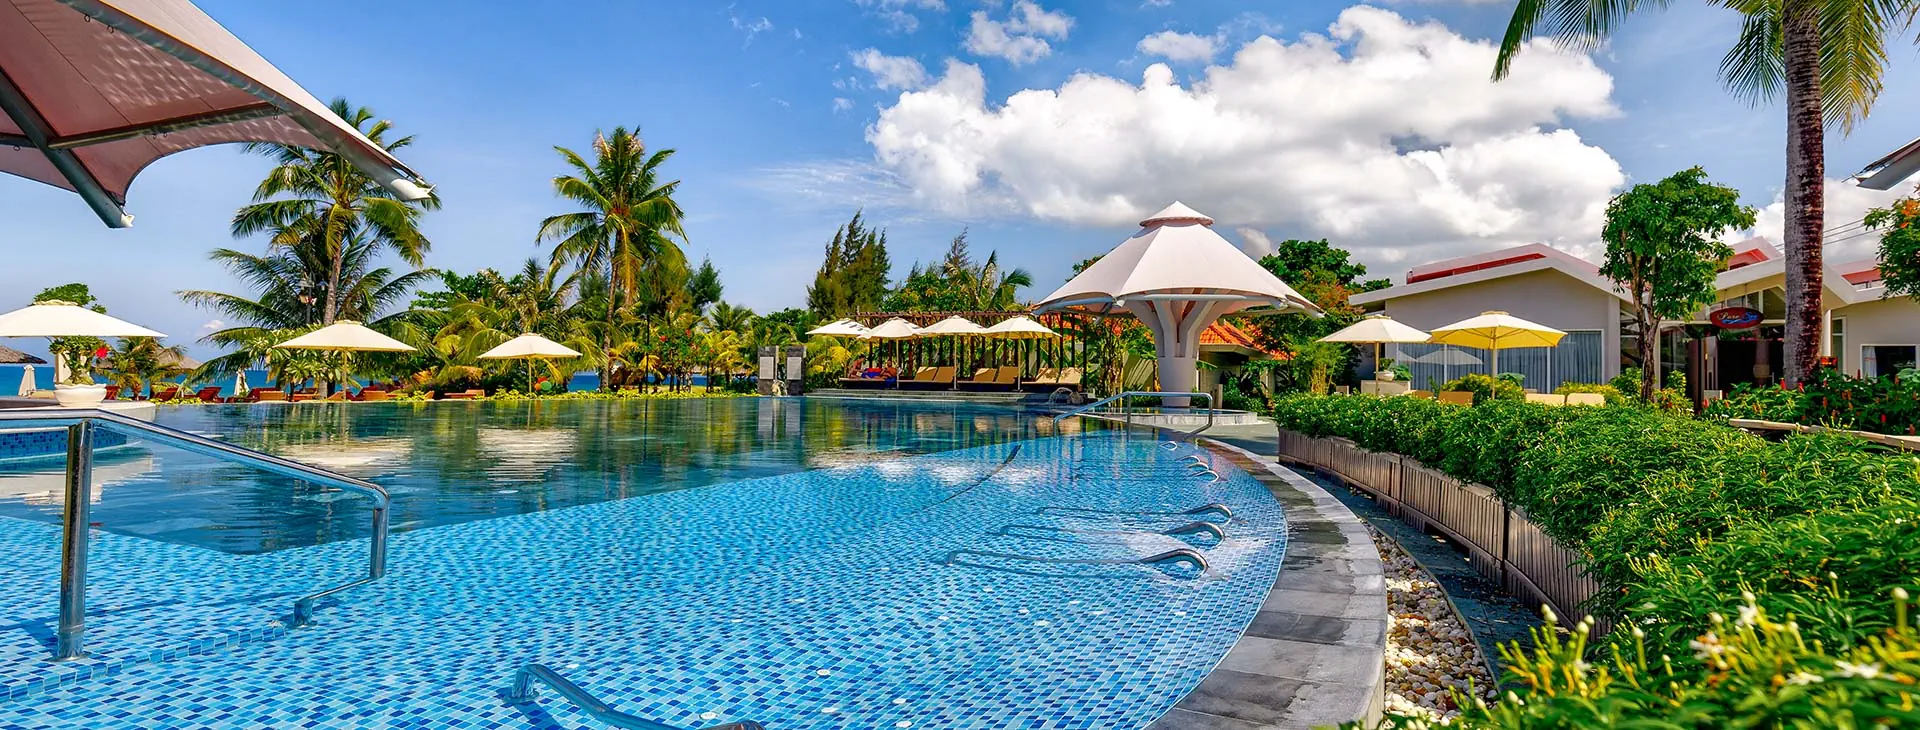 Wietnam Wyspa Phu Quoc Duong Dong Mercury Phu Quoc Resort and Villas